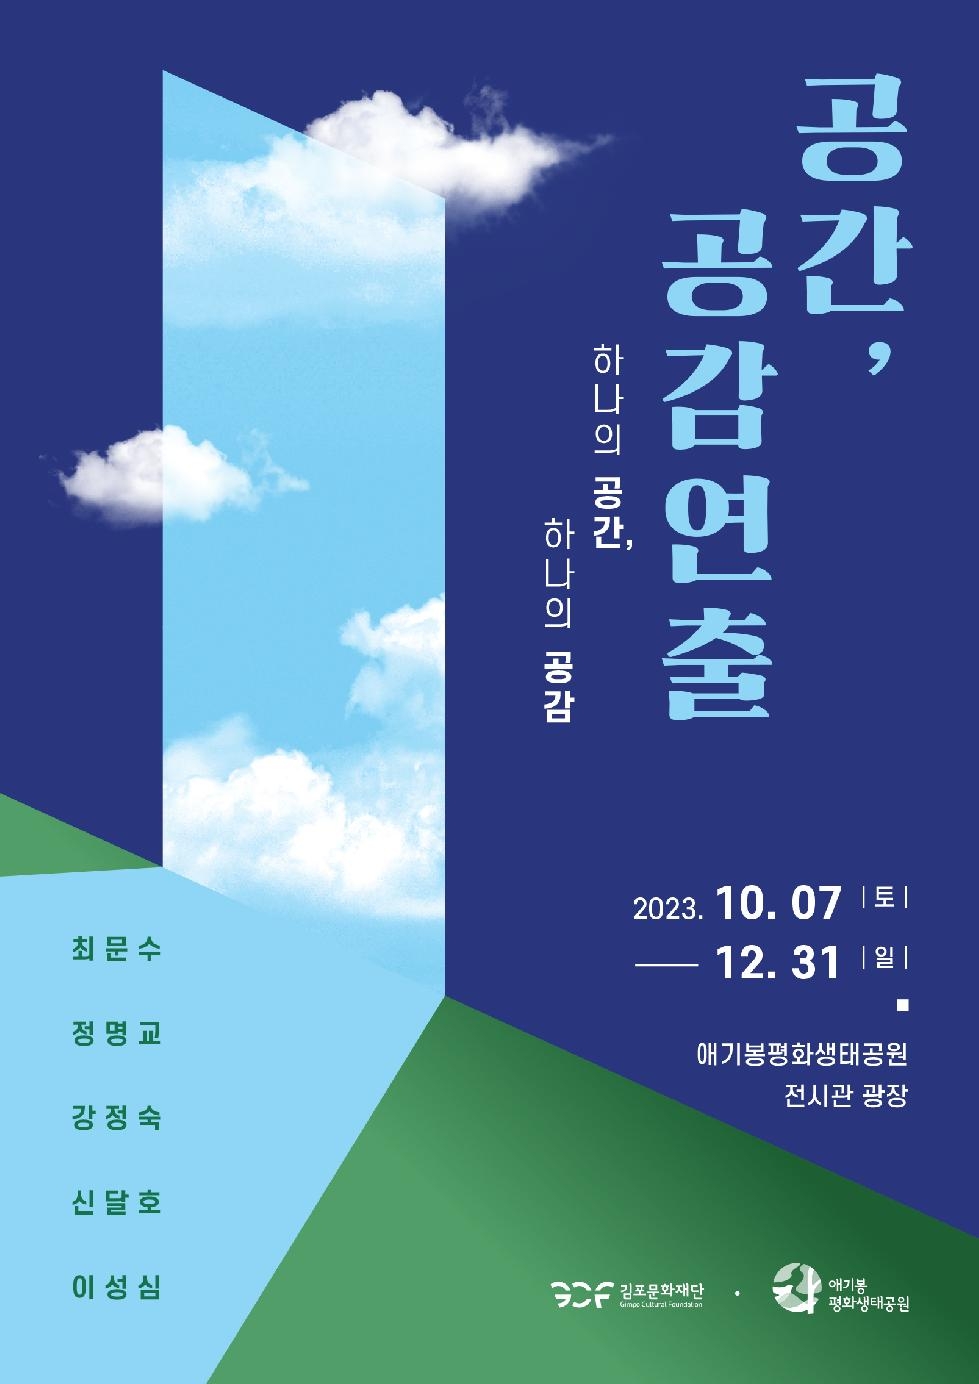 김포문화재단,애기봉평화생태공원, 2023 하반기 기획전시 [공간, 공감연출 展]개최